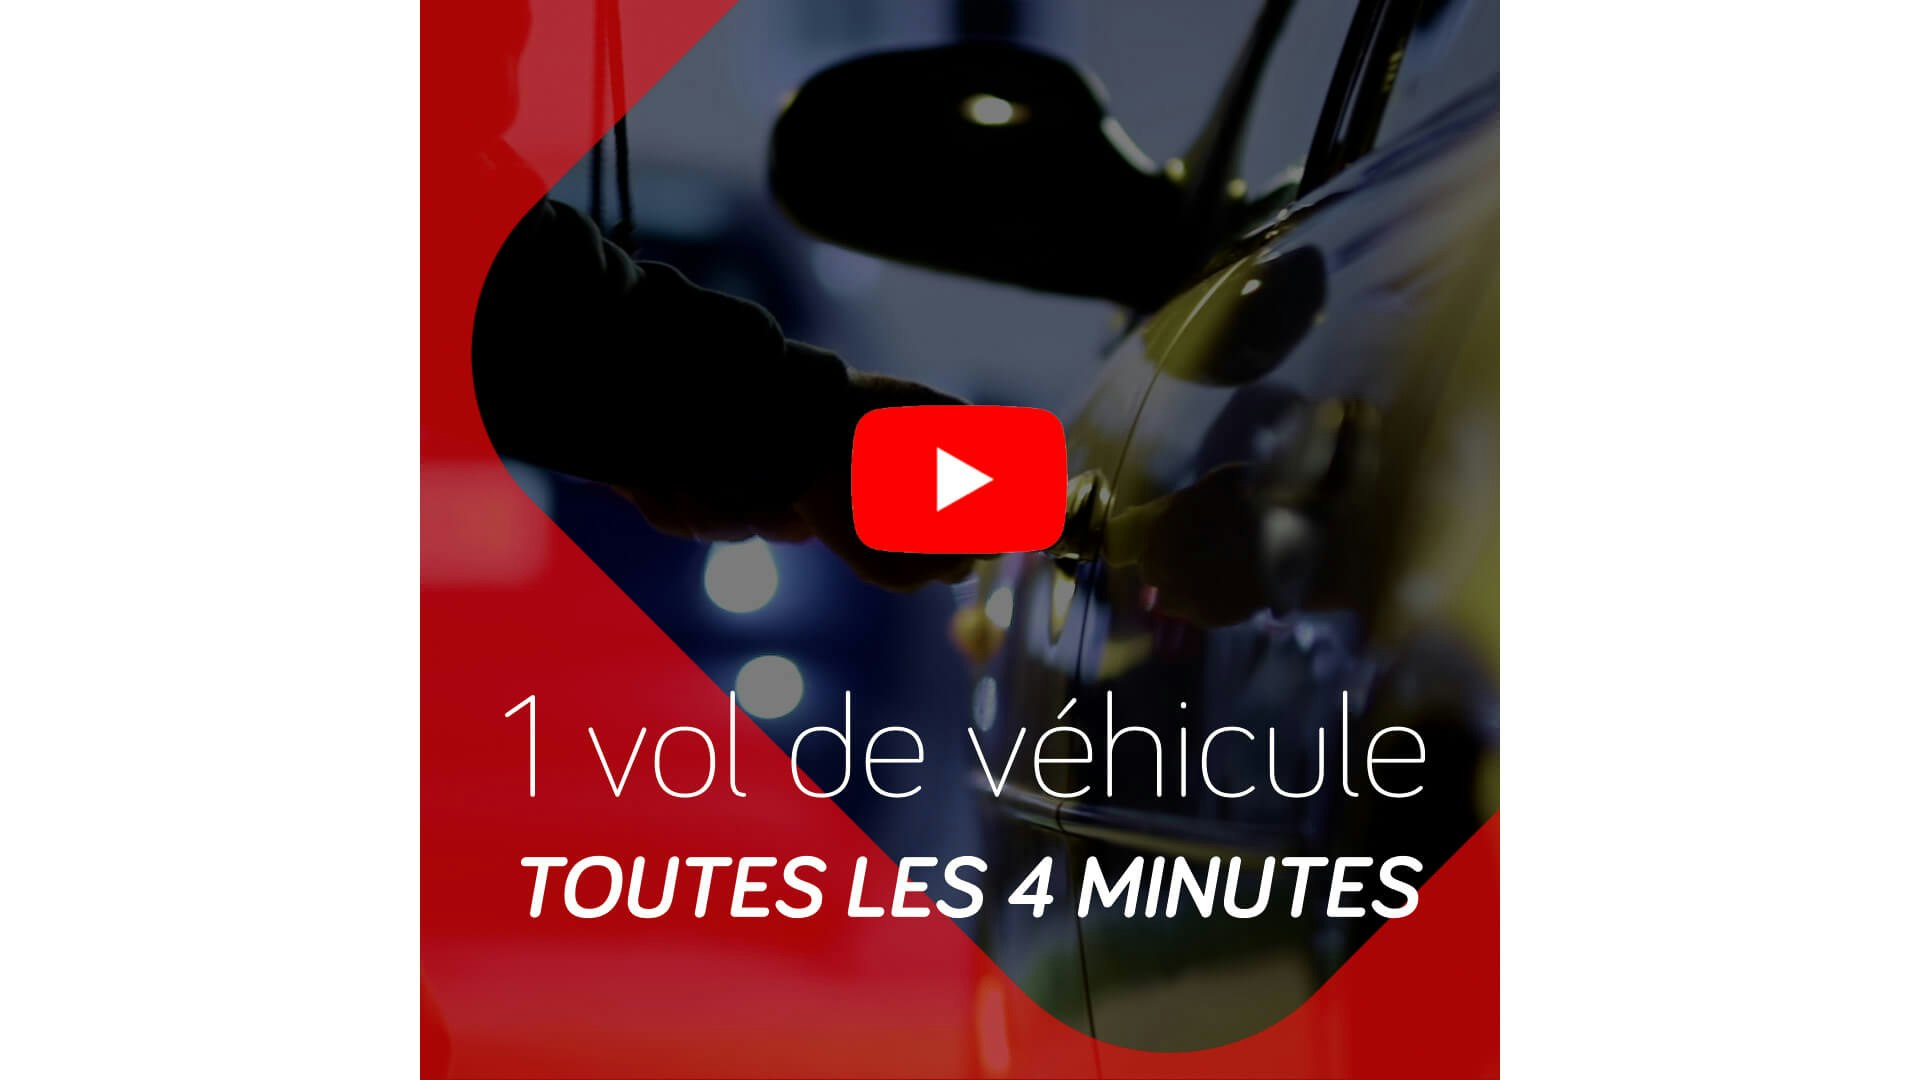 video sur les vols de voitures en France